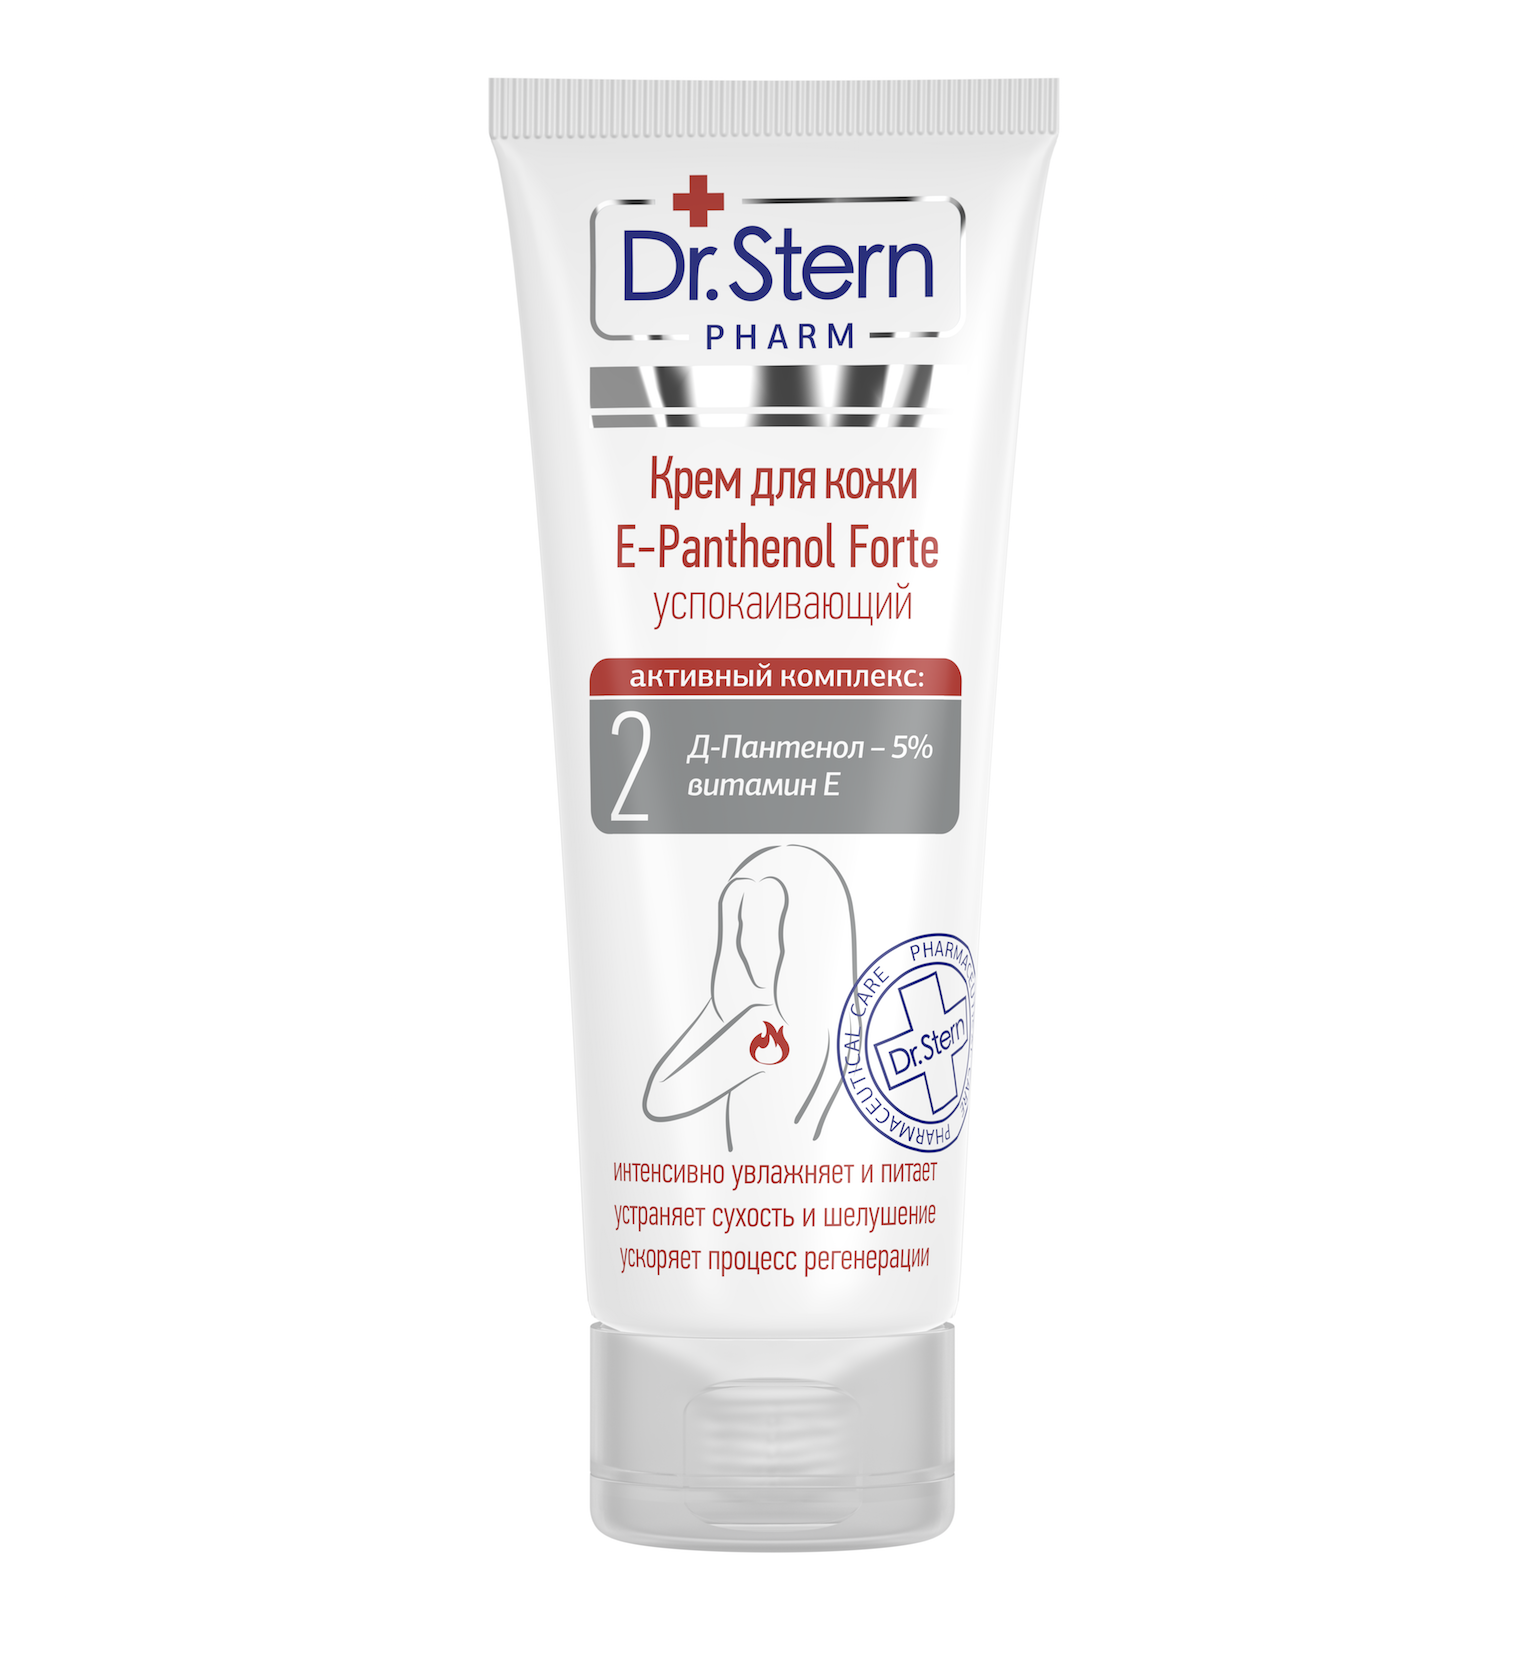 Крем Dr.Stern (Доктор Штерн) для кожи Е-Panthenol Forte успокаивающий 75 мл